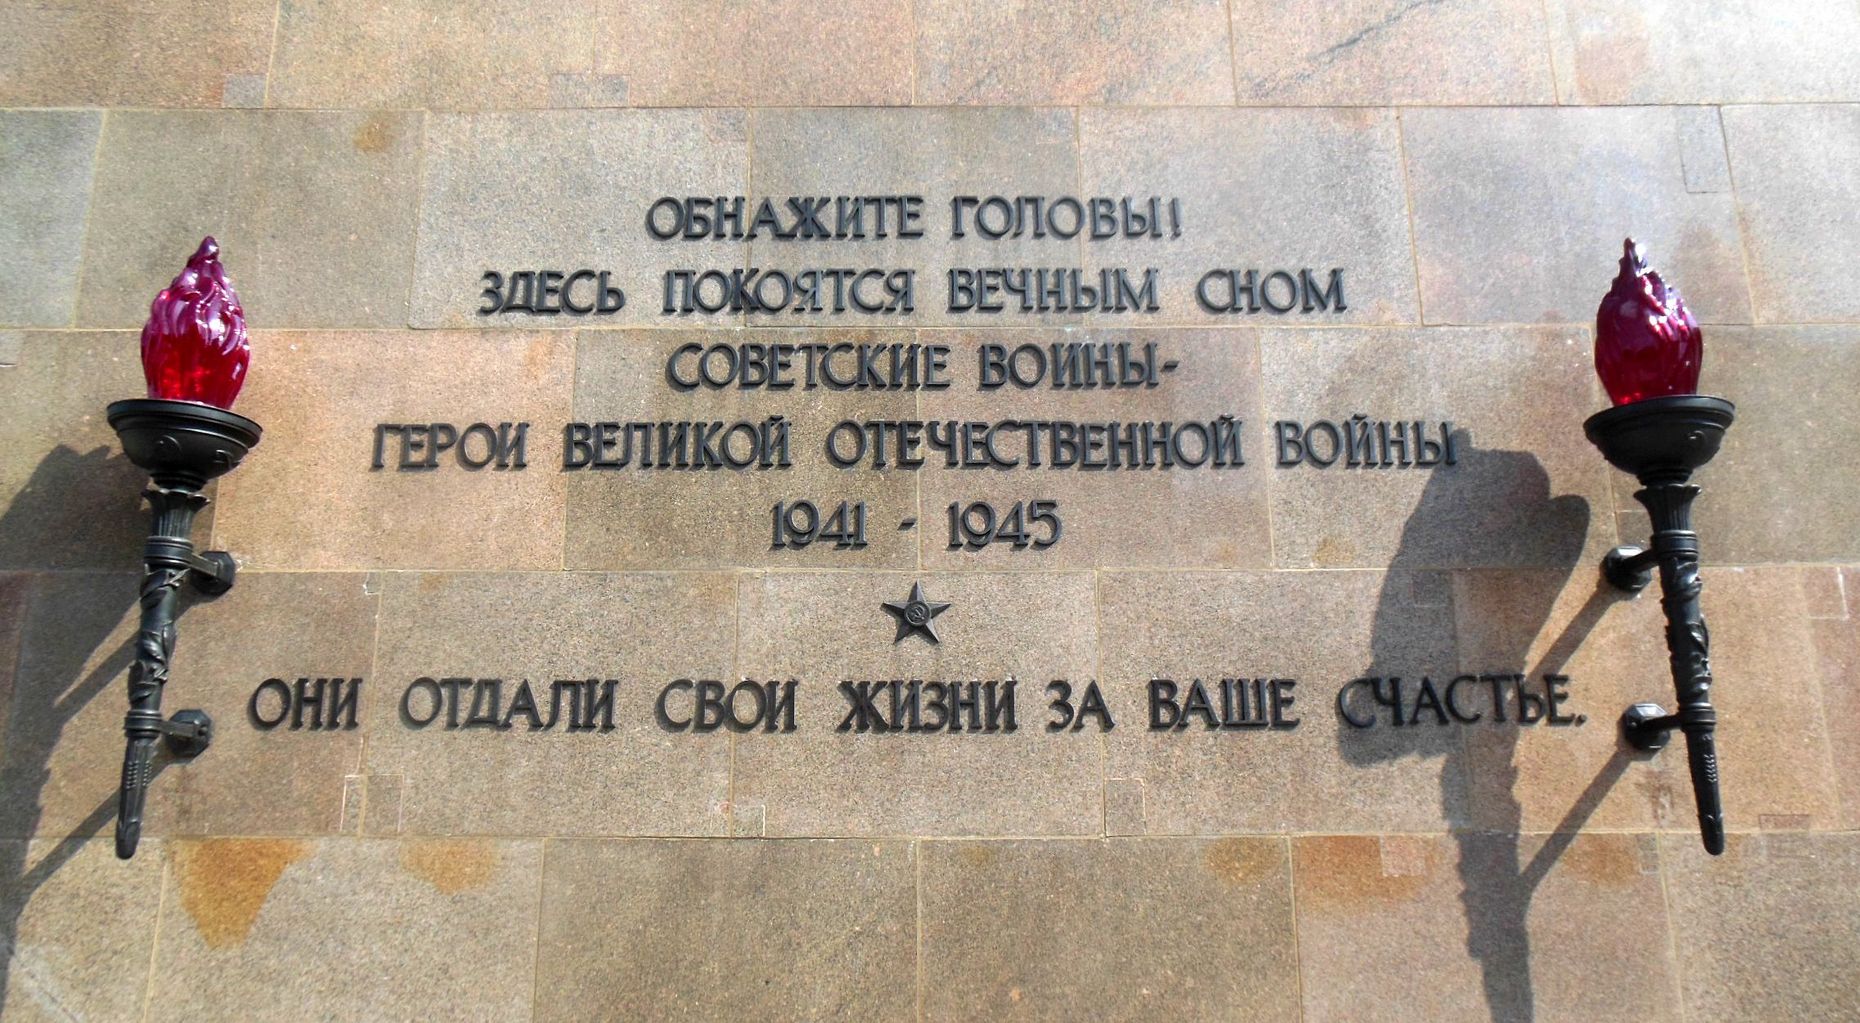 Das Bild zeigt eine Inschrift in kyrillischen Buchstaben.